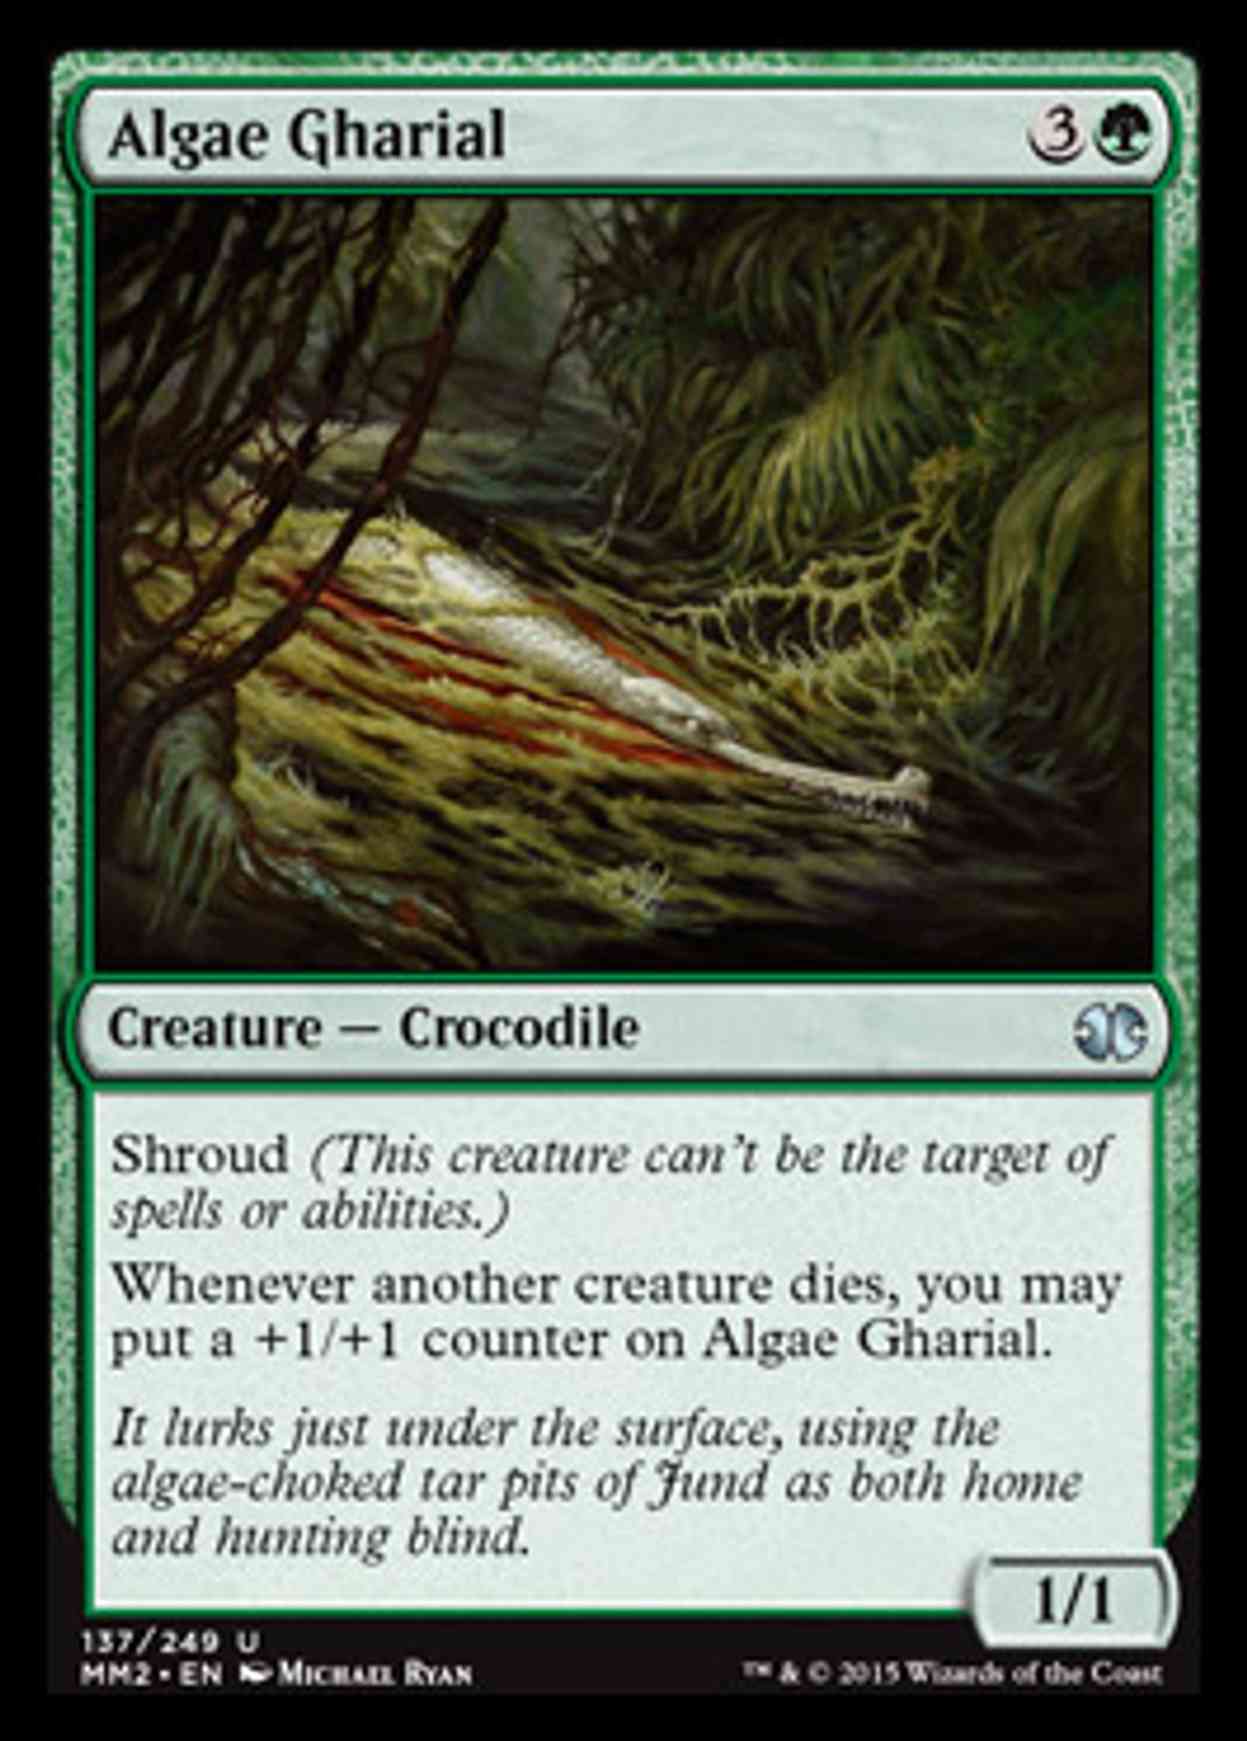 Algae Gharial magic card front